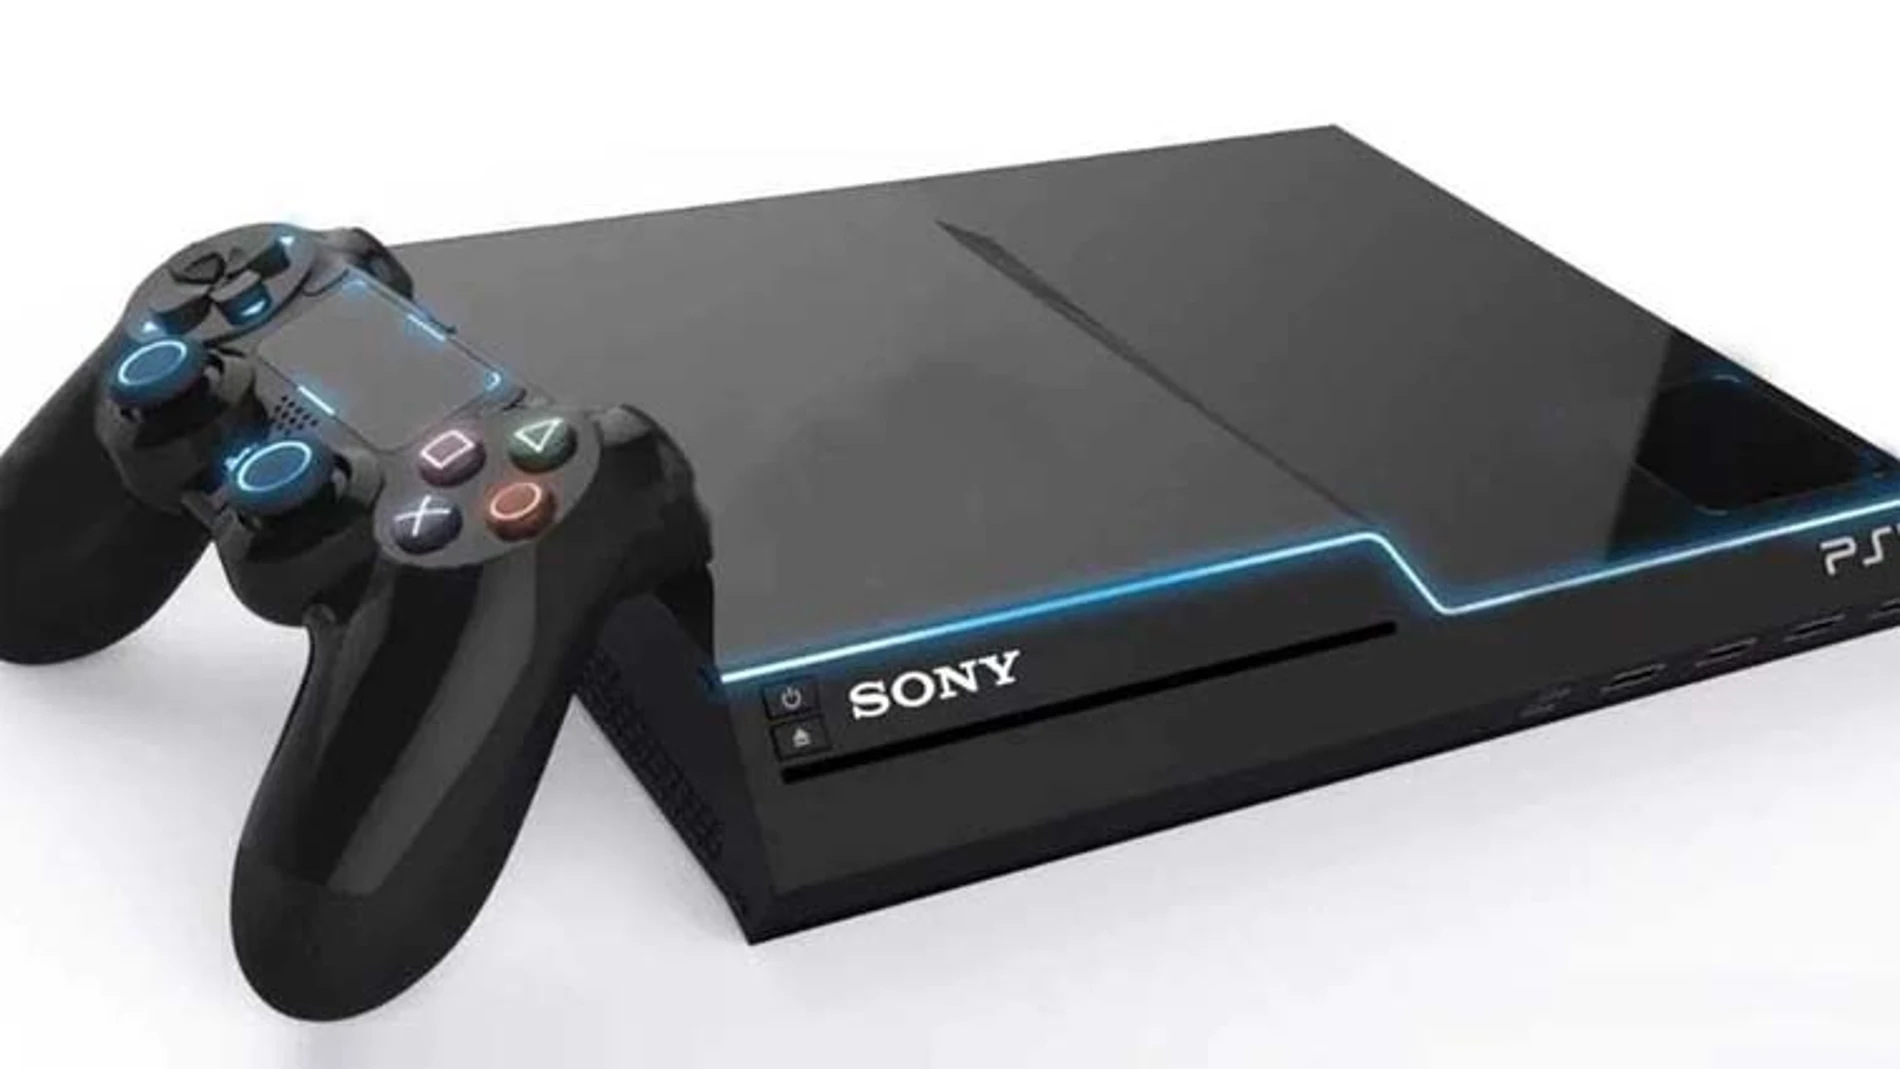 Confirmado el nombre de PlayStation 5 y su lanzamiento a final de 2020, con una función de vibración reinventada y la posibilidad de programar el gatillo de los mandos.